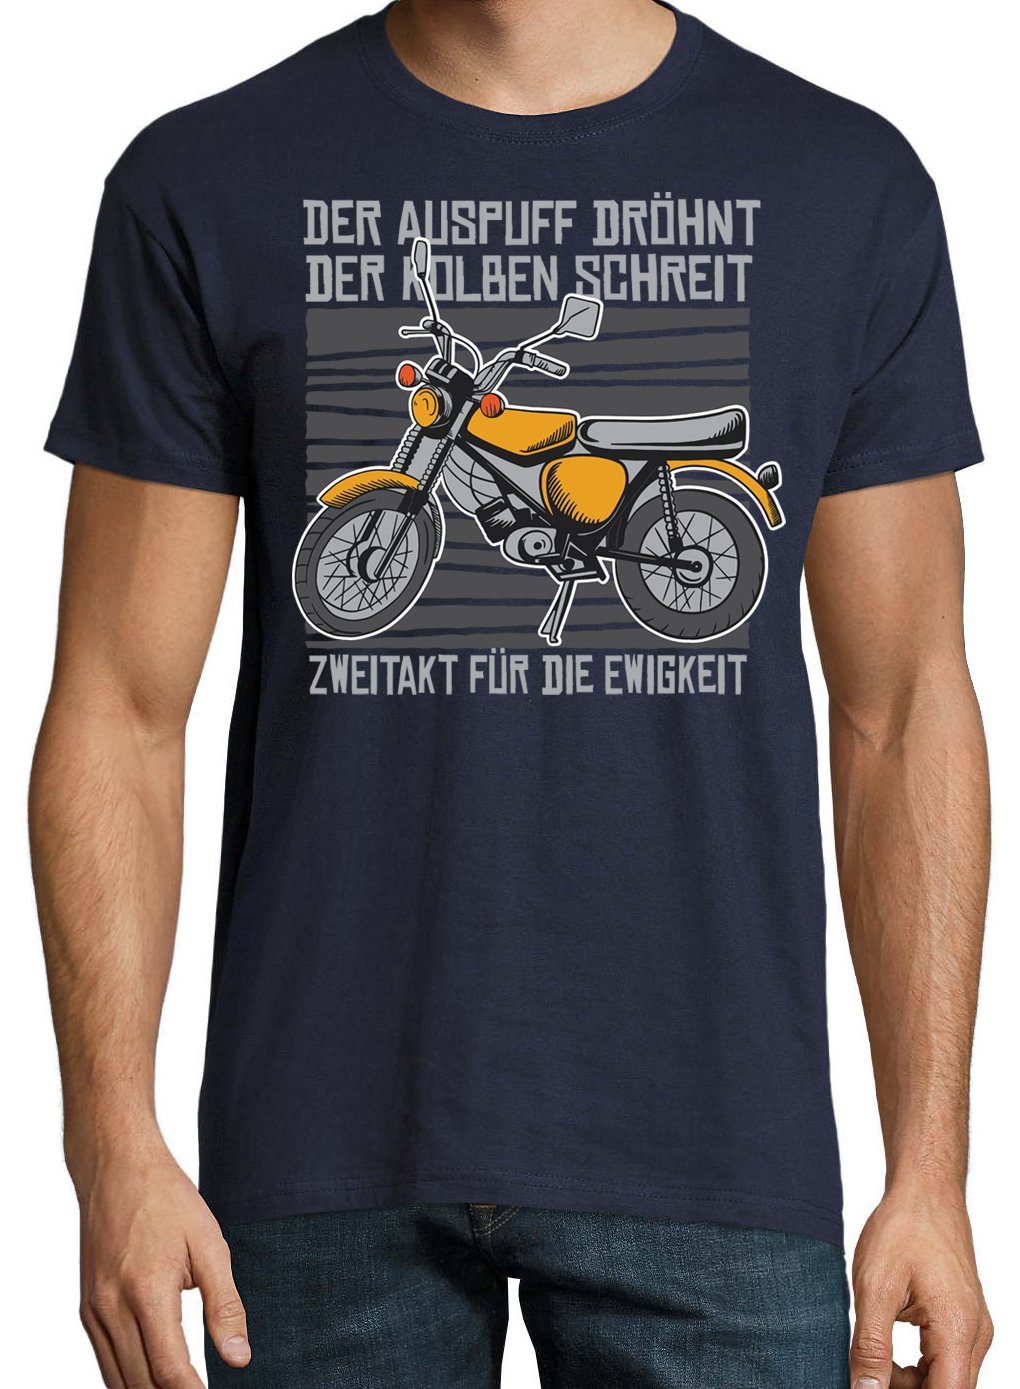 Die Shirt Navyblau Für Zweitakt T-Shirt Ewigkeit Youth Designz mit trendigem Frontprint Herren